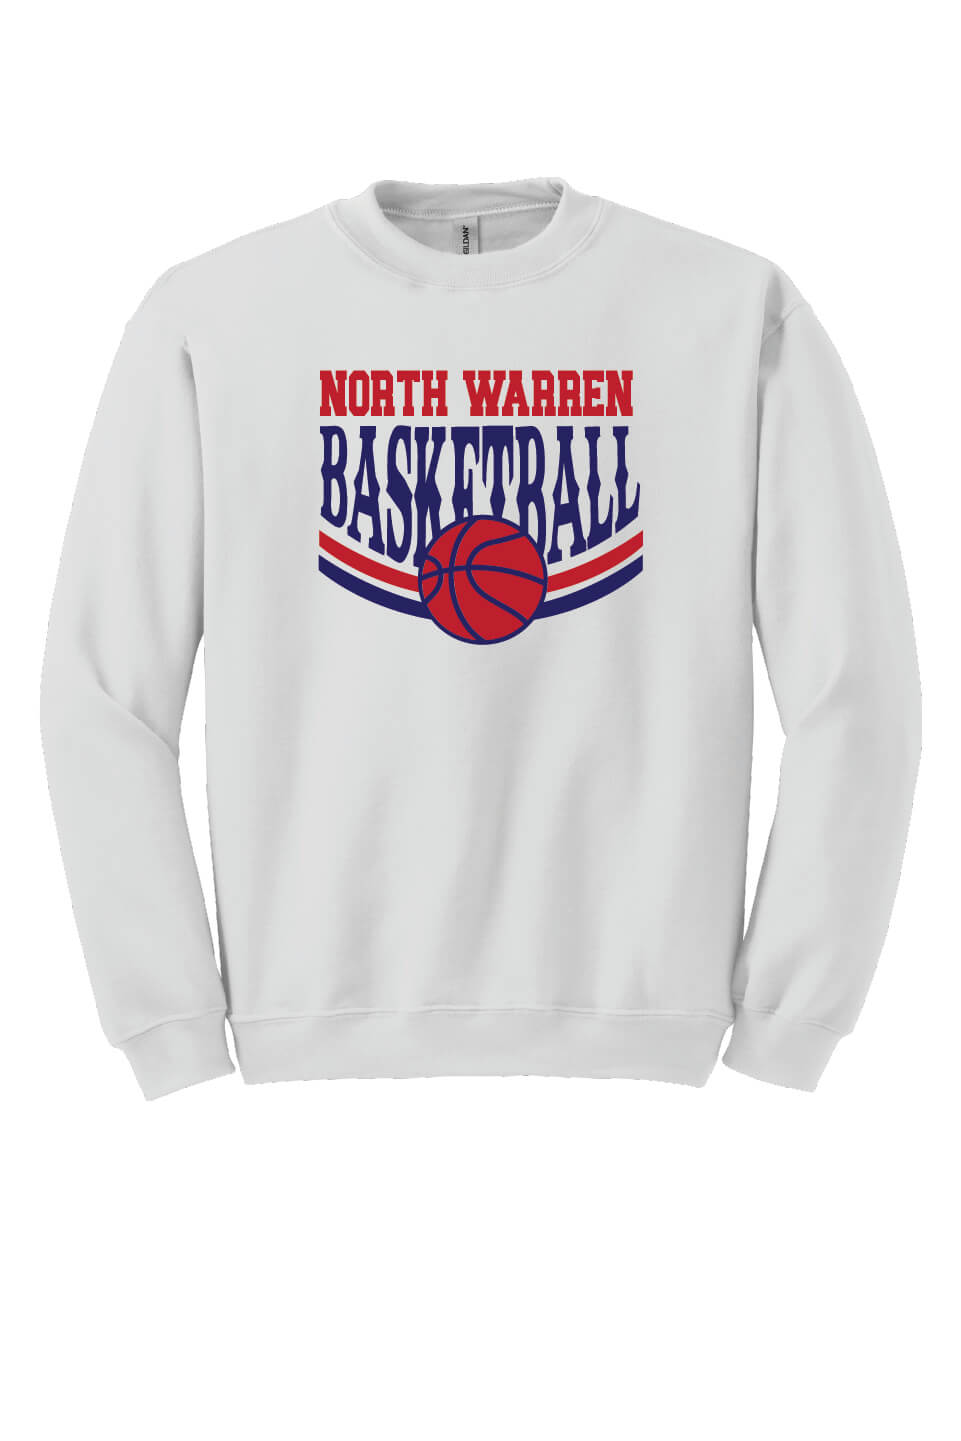 NW Basketball Crewneck Sweatshirt white